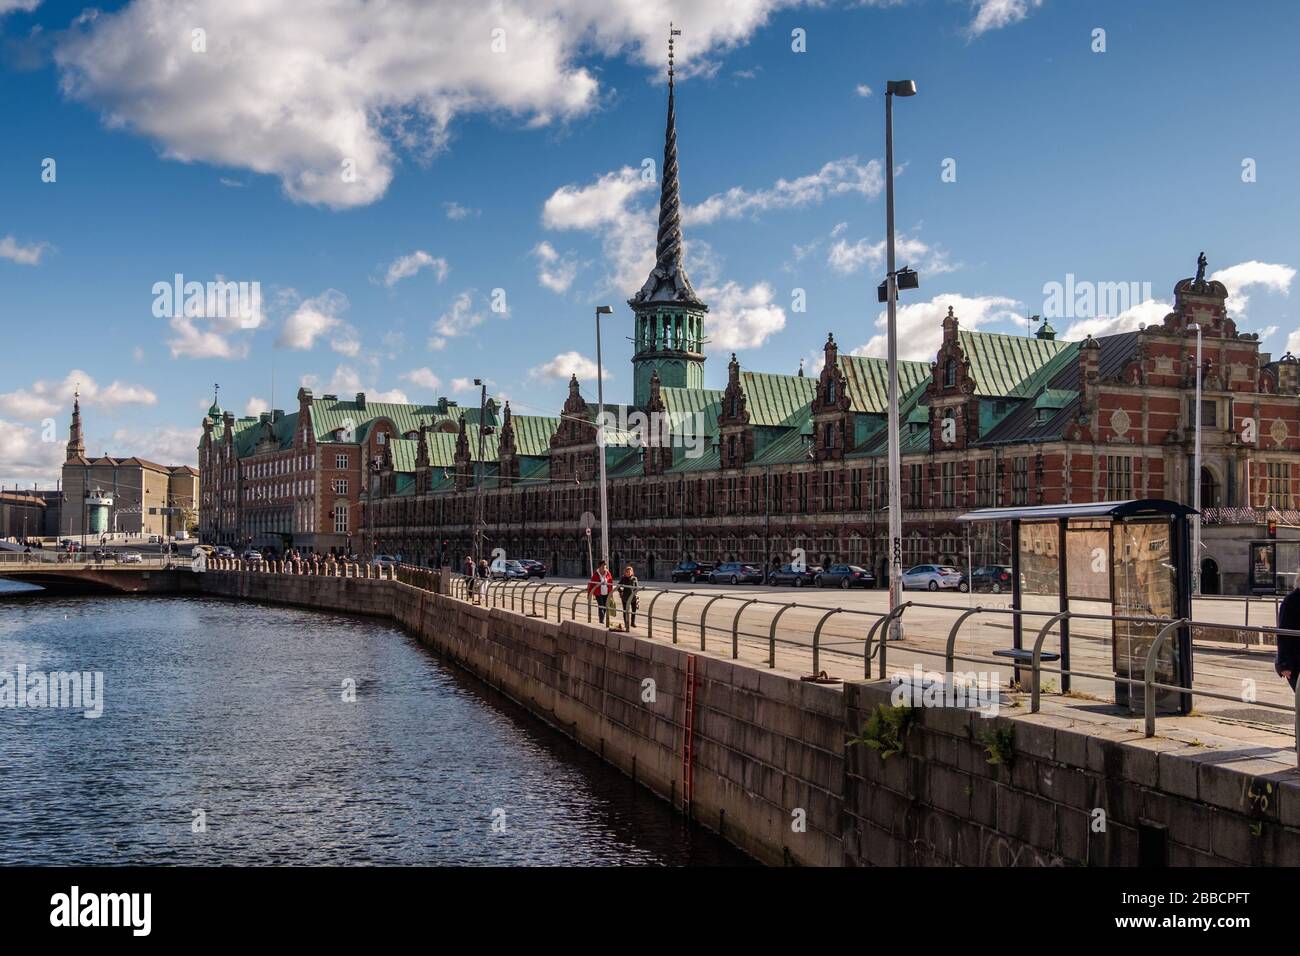 Slotholmens canal and Borsen, former stock exchange built in 1619, Copenhagen, Denmark Stock Photo